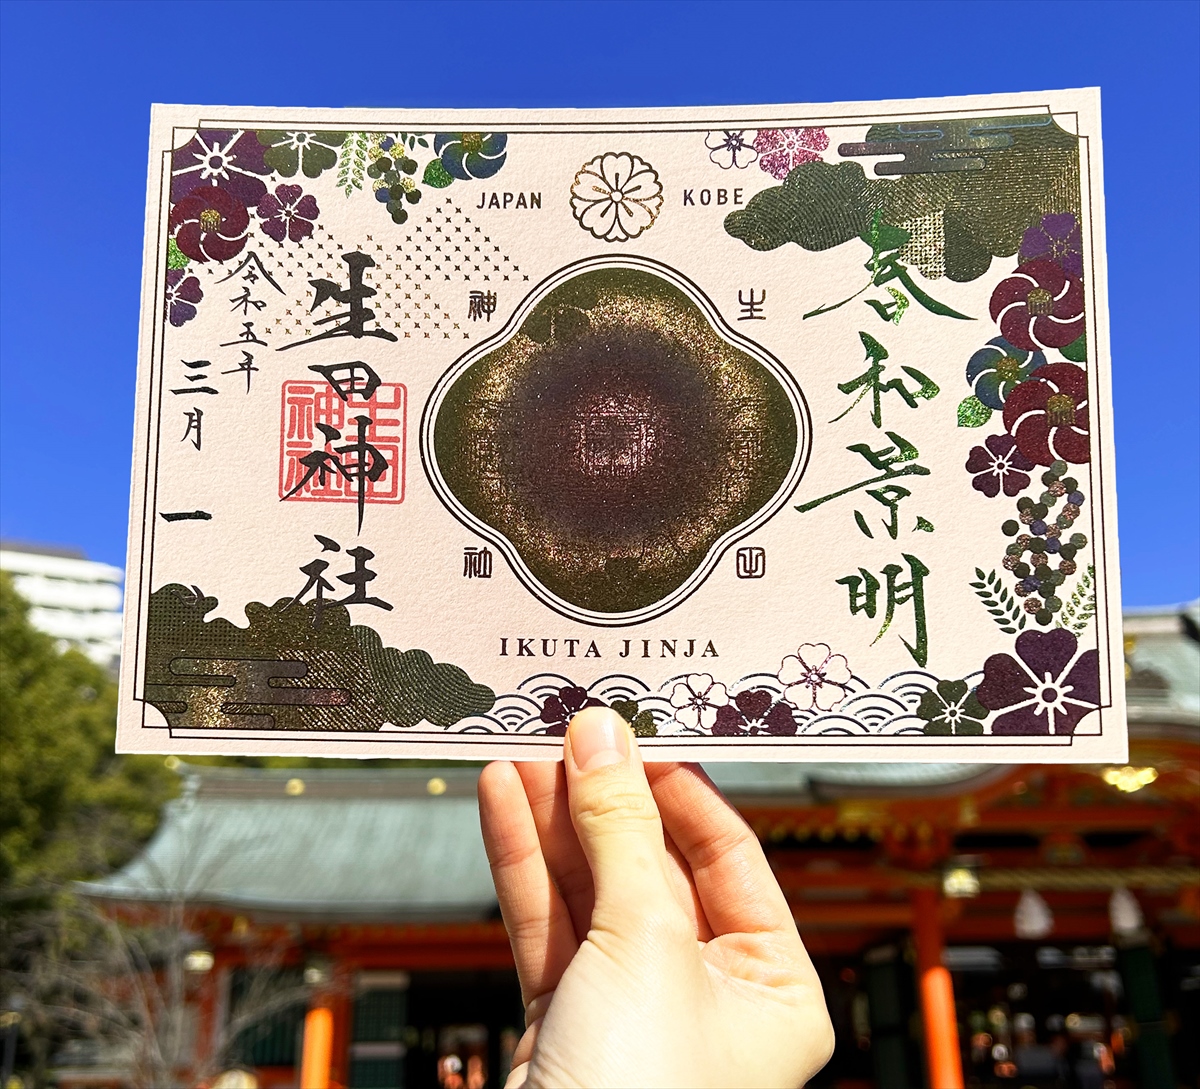 神戸の生田神社で春を感じる「限定御朱印」6種が登場